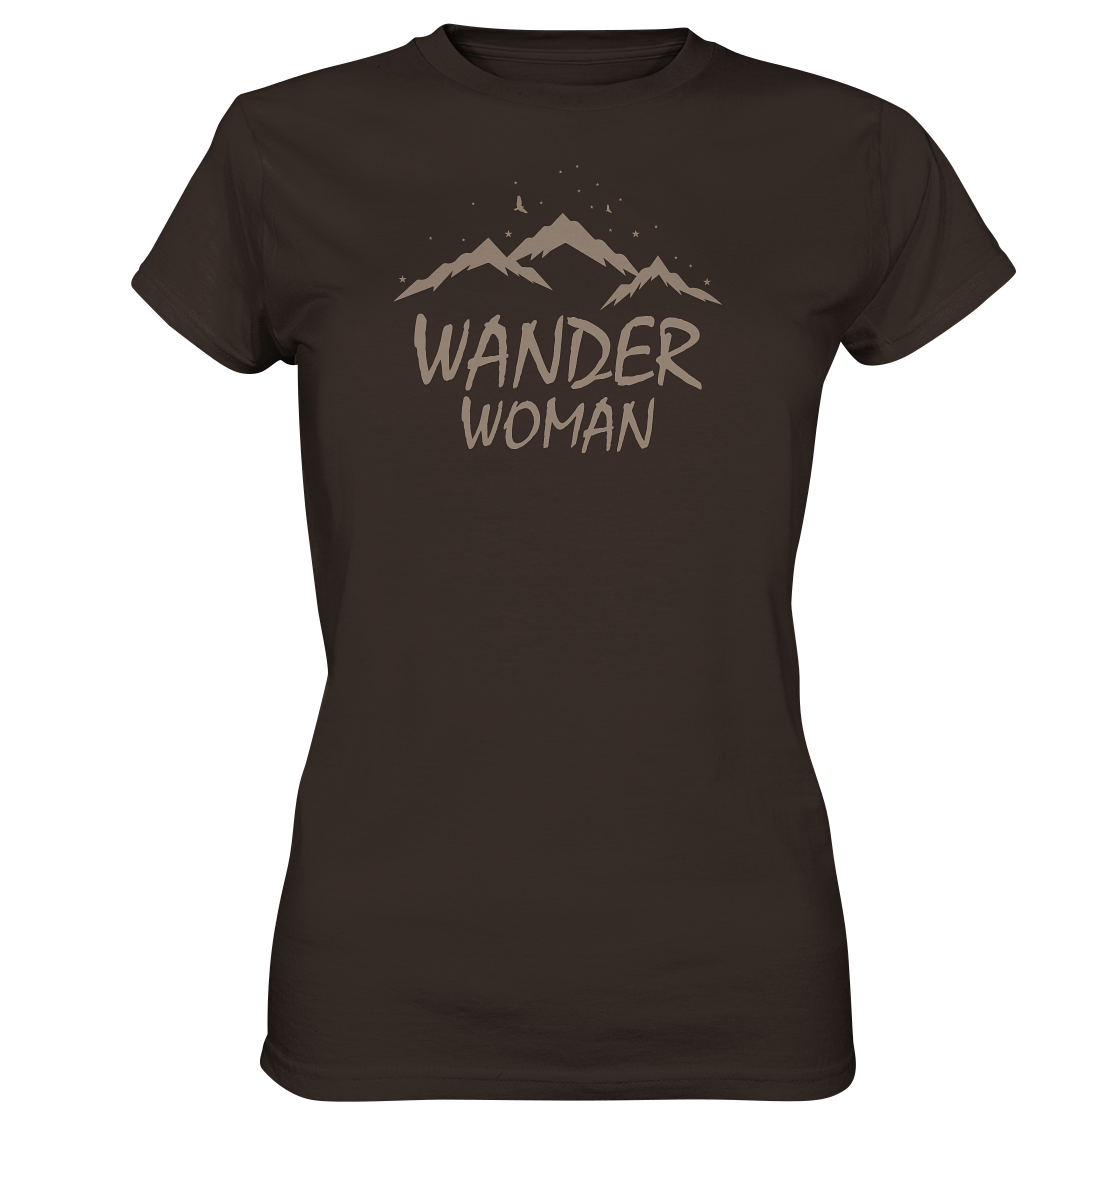 FÜR LADIES - Shirt Wanderwoman - Premium Damen Shirt